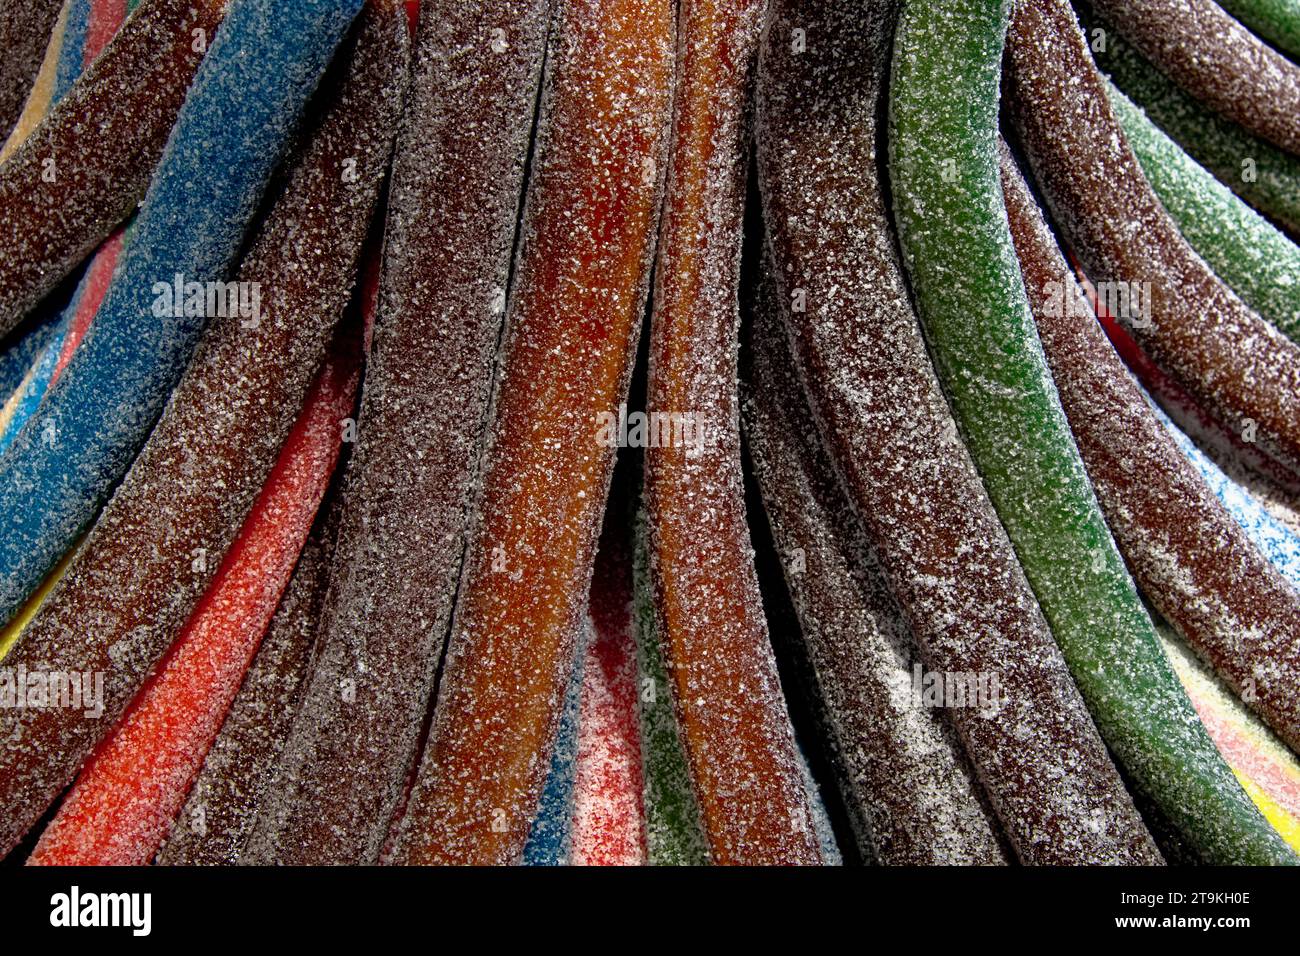 Gros plan de cordes de bonbons colorées. Ils sont tordus, enrobés de sucre, et viennent en rouge, bleu, vert et brun. Banque D'Images